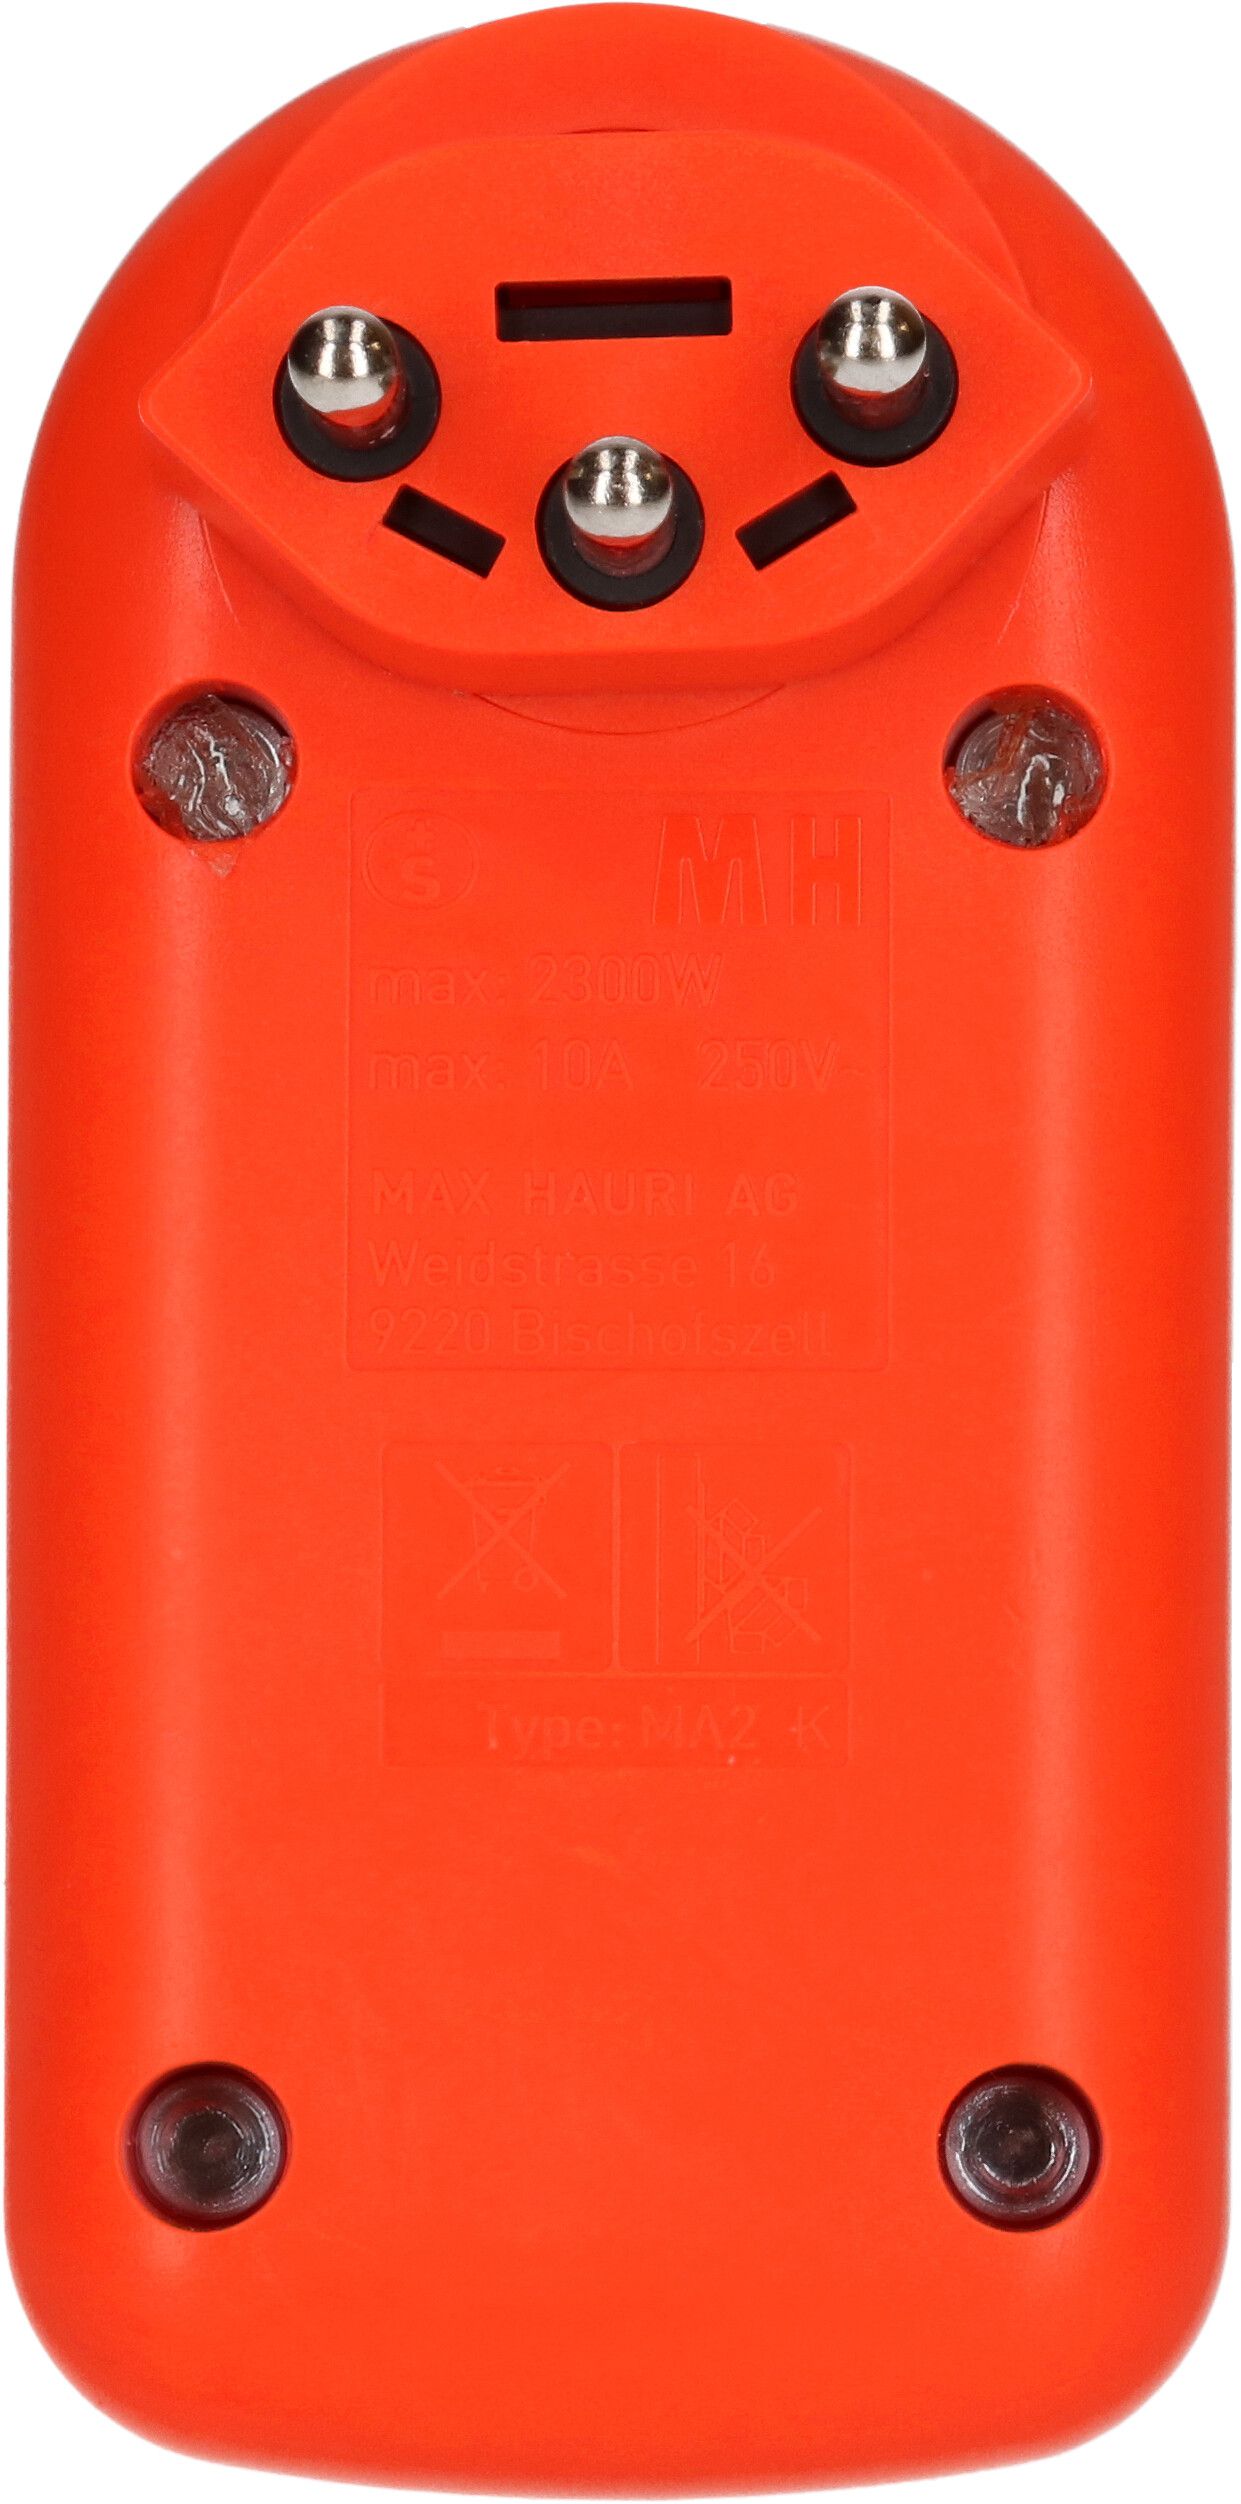 Abzweigstecker maxADAPTturn 2x Typ 13 fl-orange drehbar BS